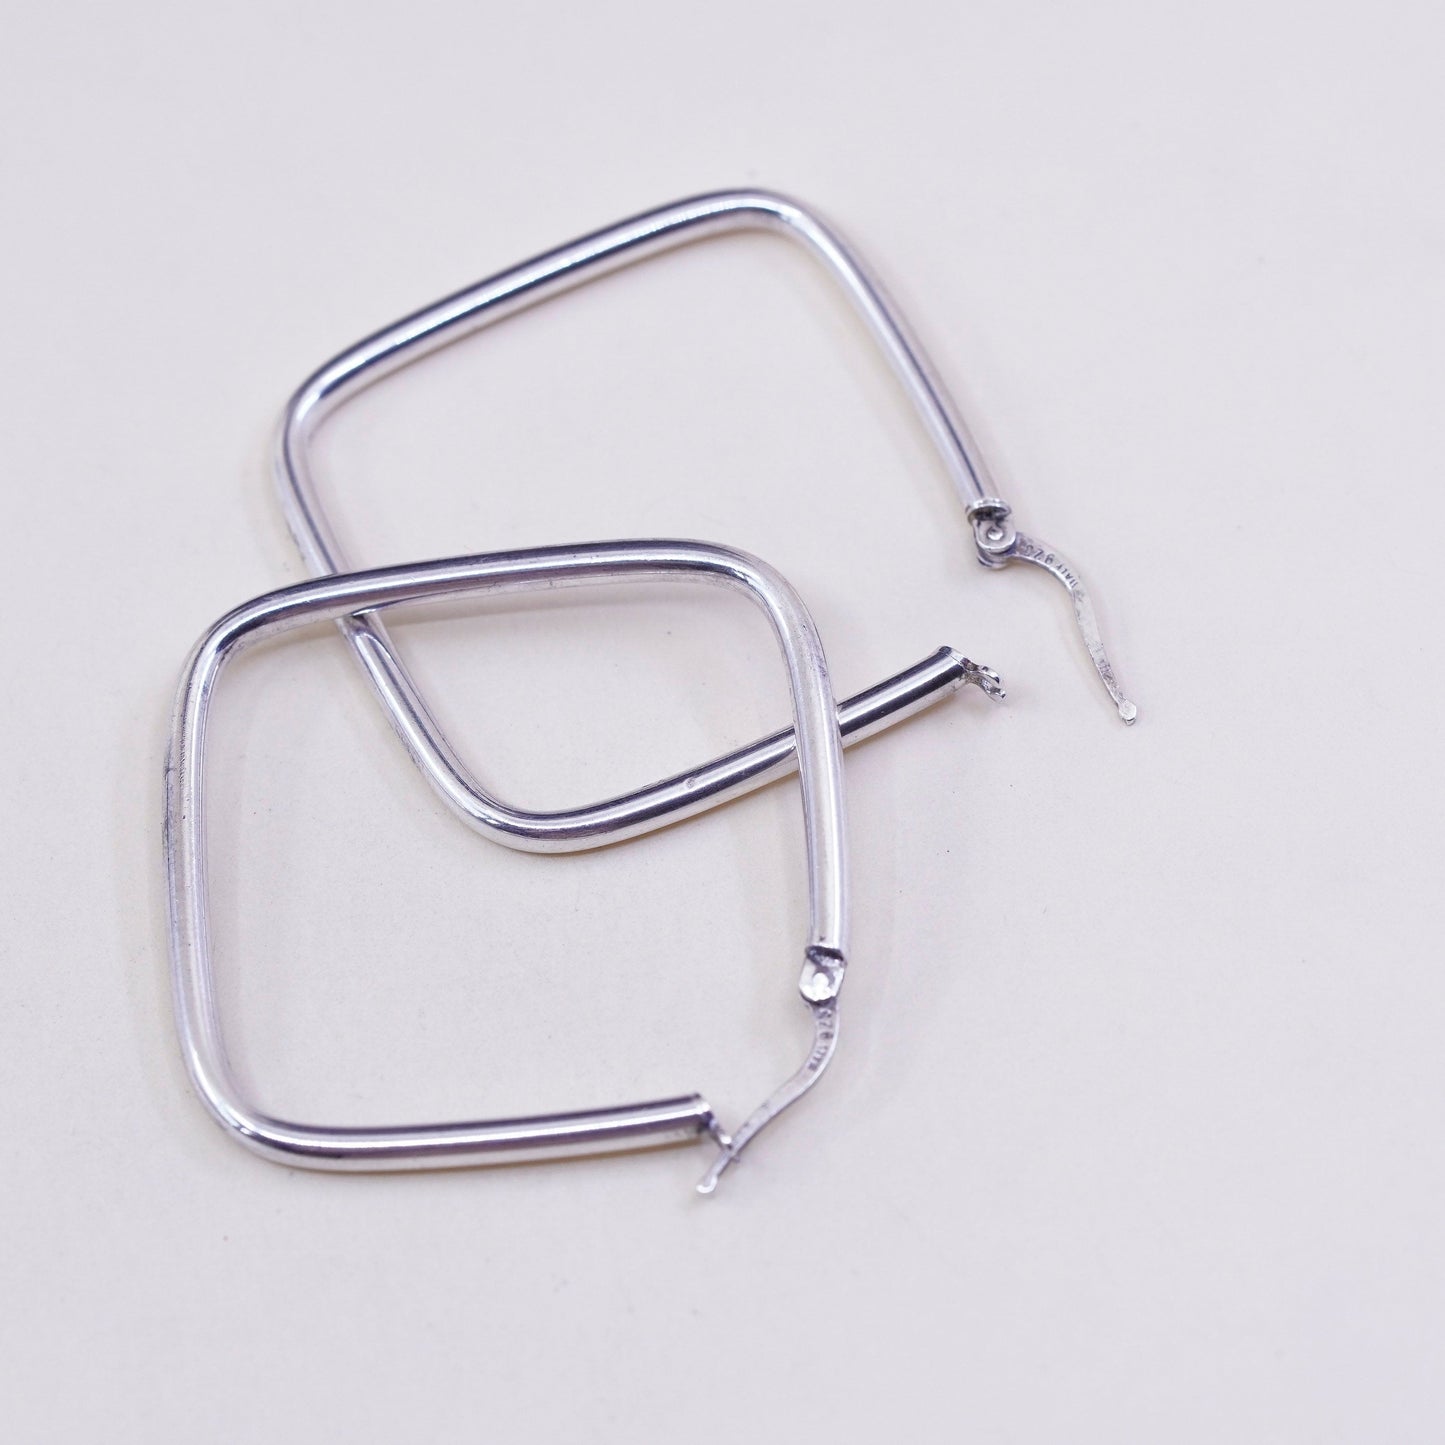 1.5” Vintage sterling silver loop earrings, square minimalist primitive hoops